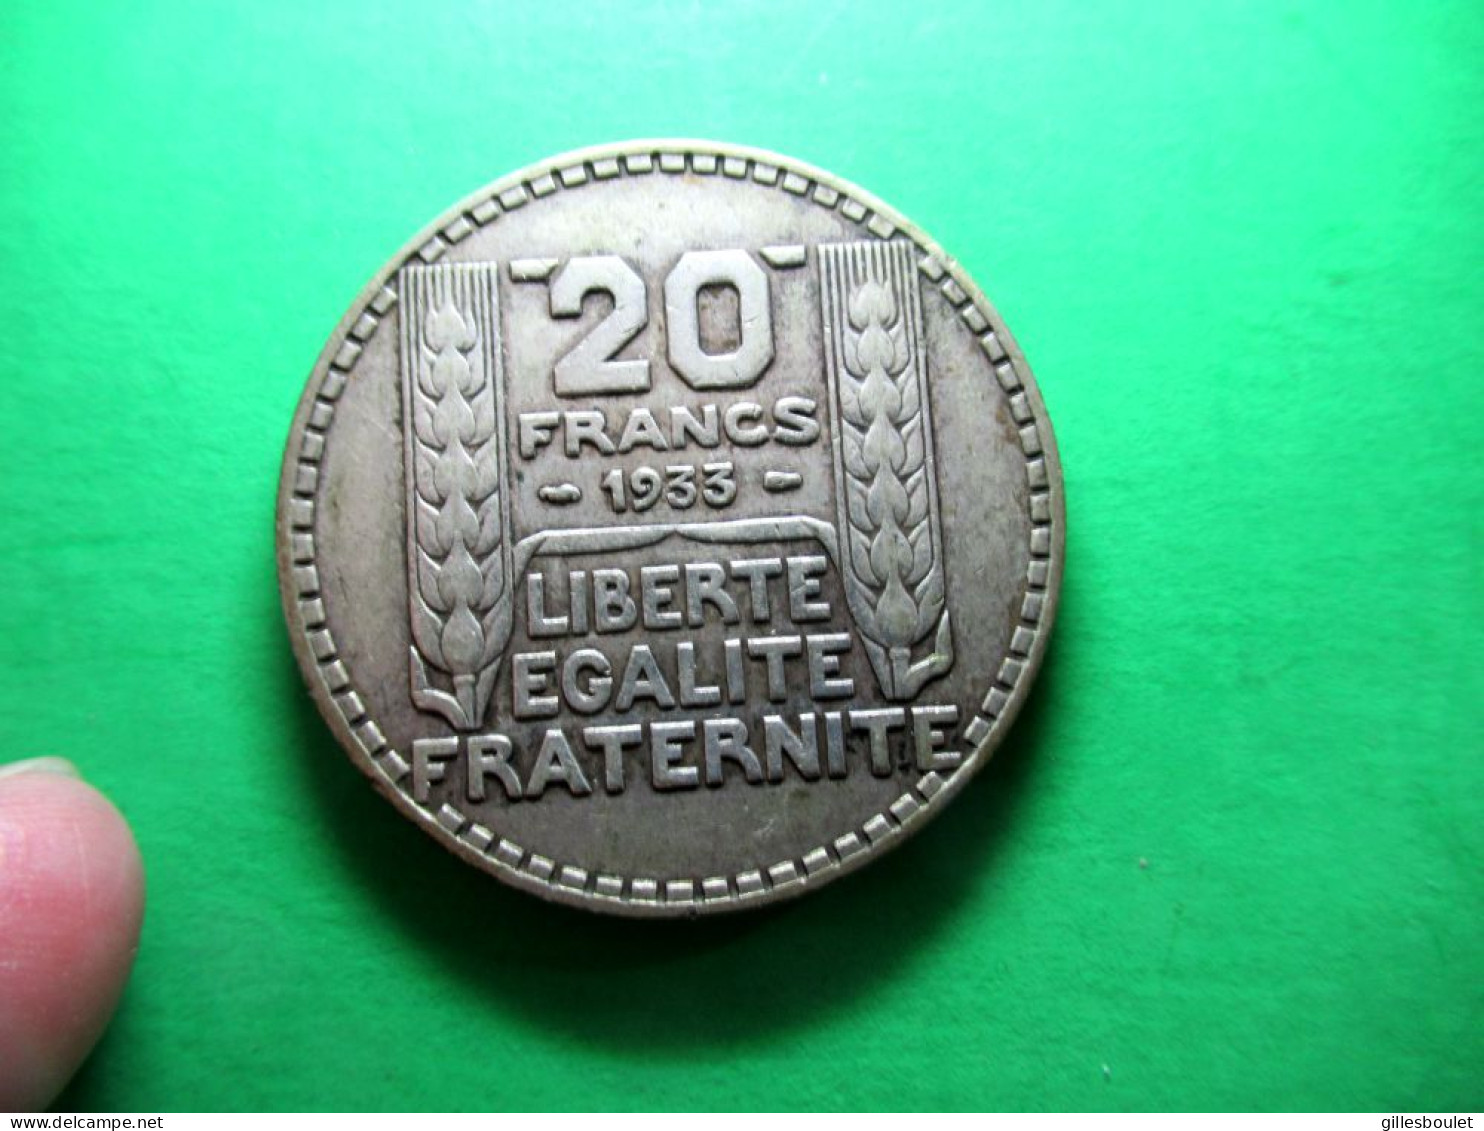 Groupe 4 pièces dont rare 10 francs 1945 (rameaux courts) SUP. 2 en argent: 20fr, 1933, 10fr. 1930 et 10fr.1948.